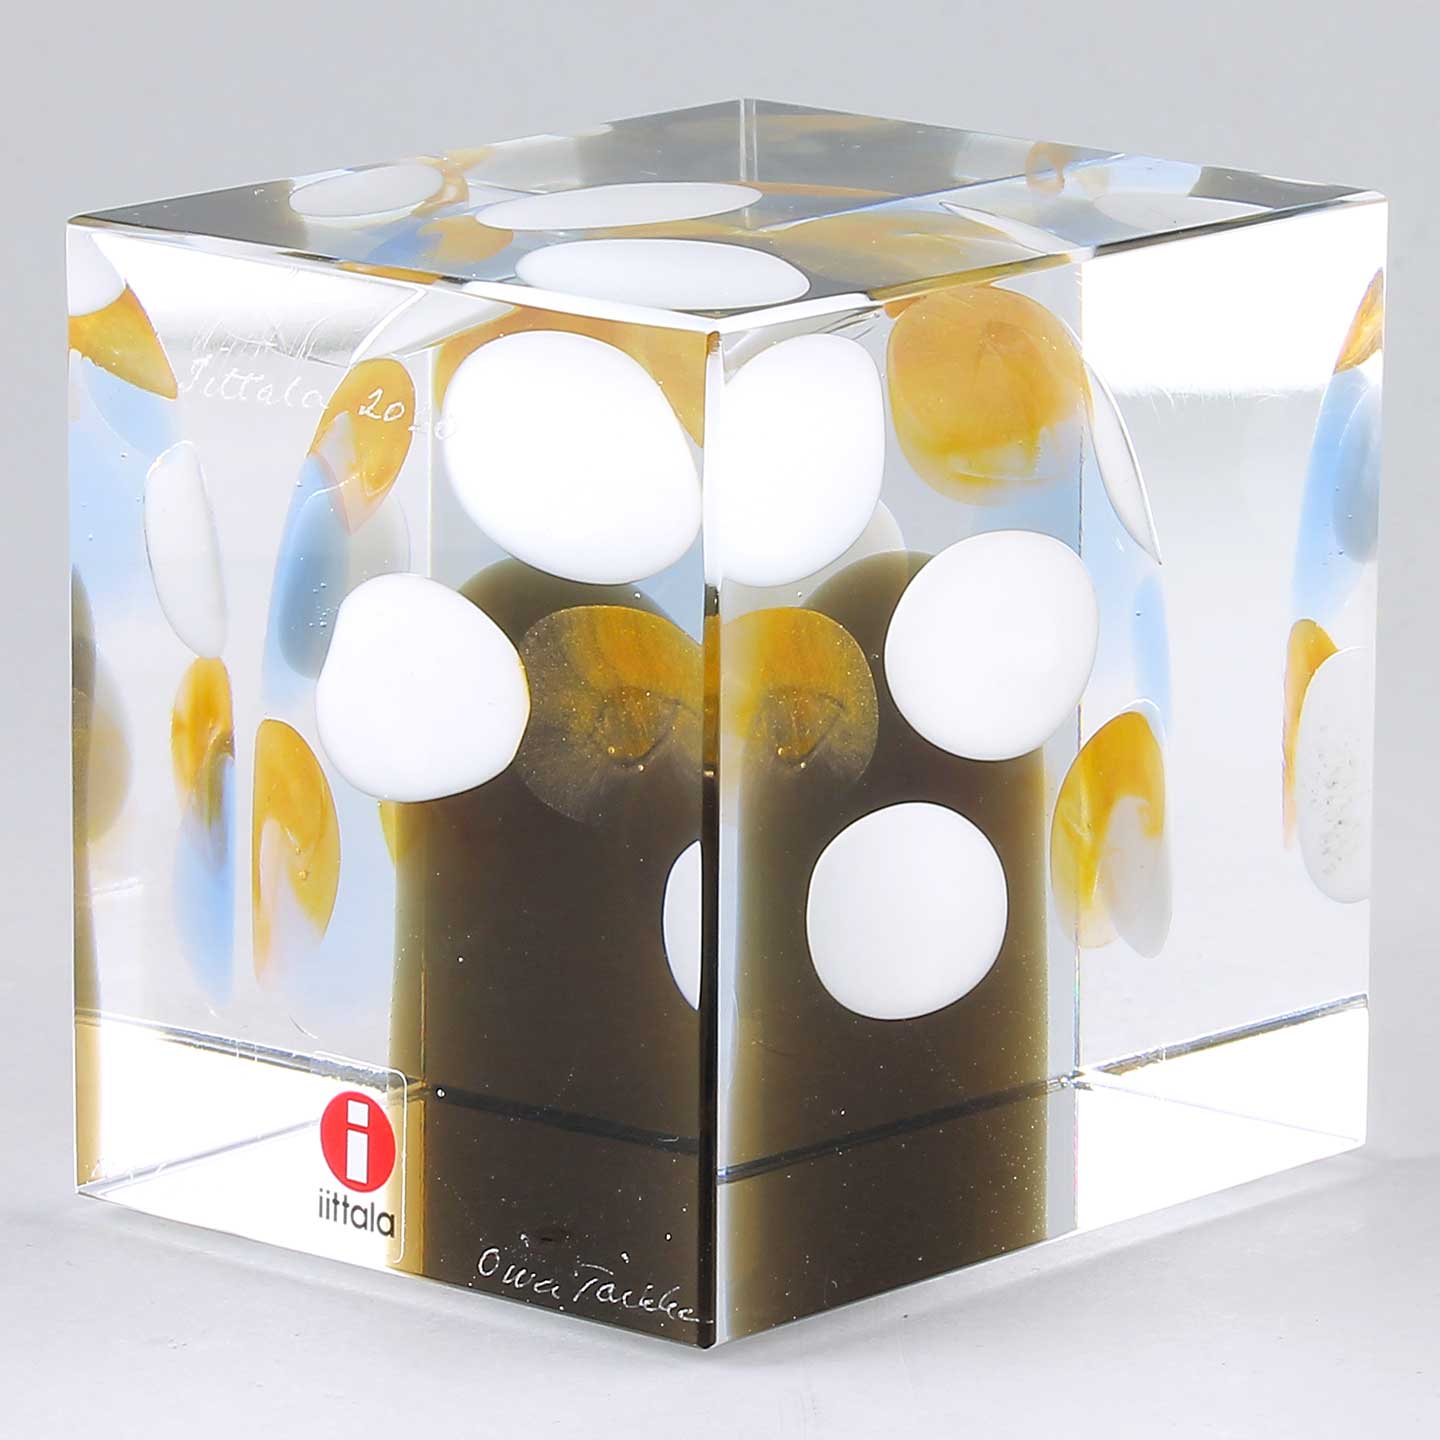 iittala イッタラ Annual Cube アニュアルキューブ 2000年 Oiva Toikka 